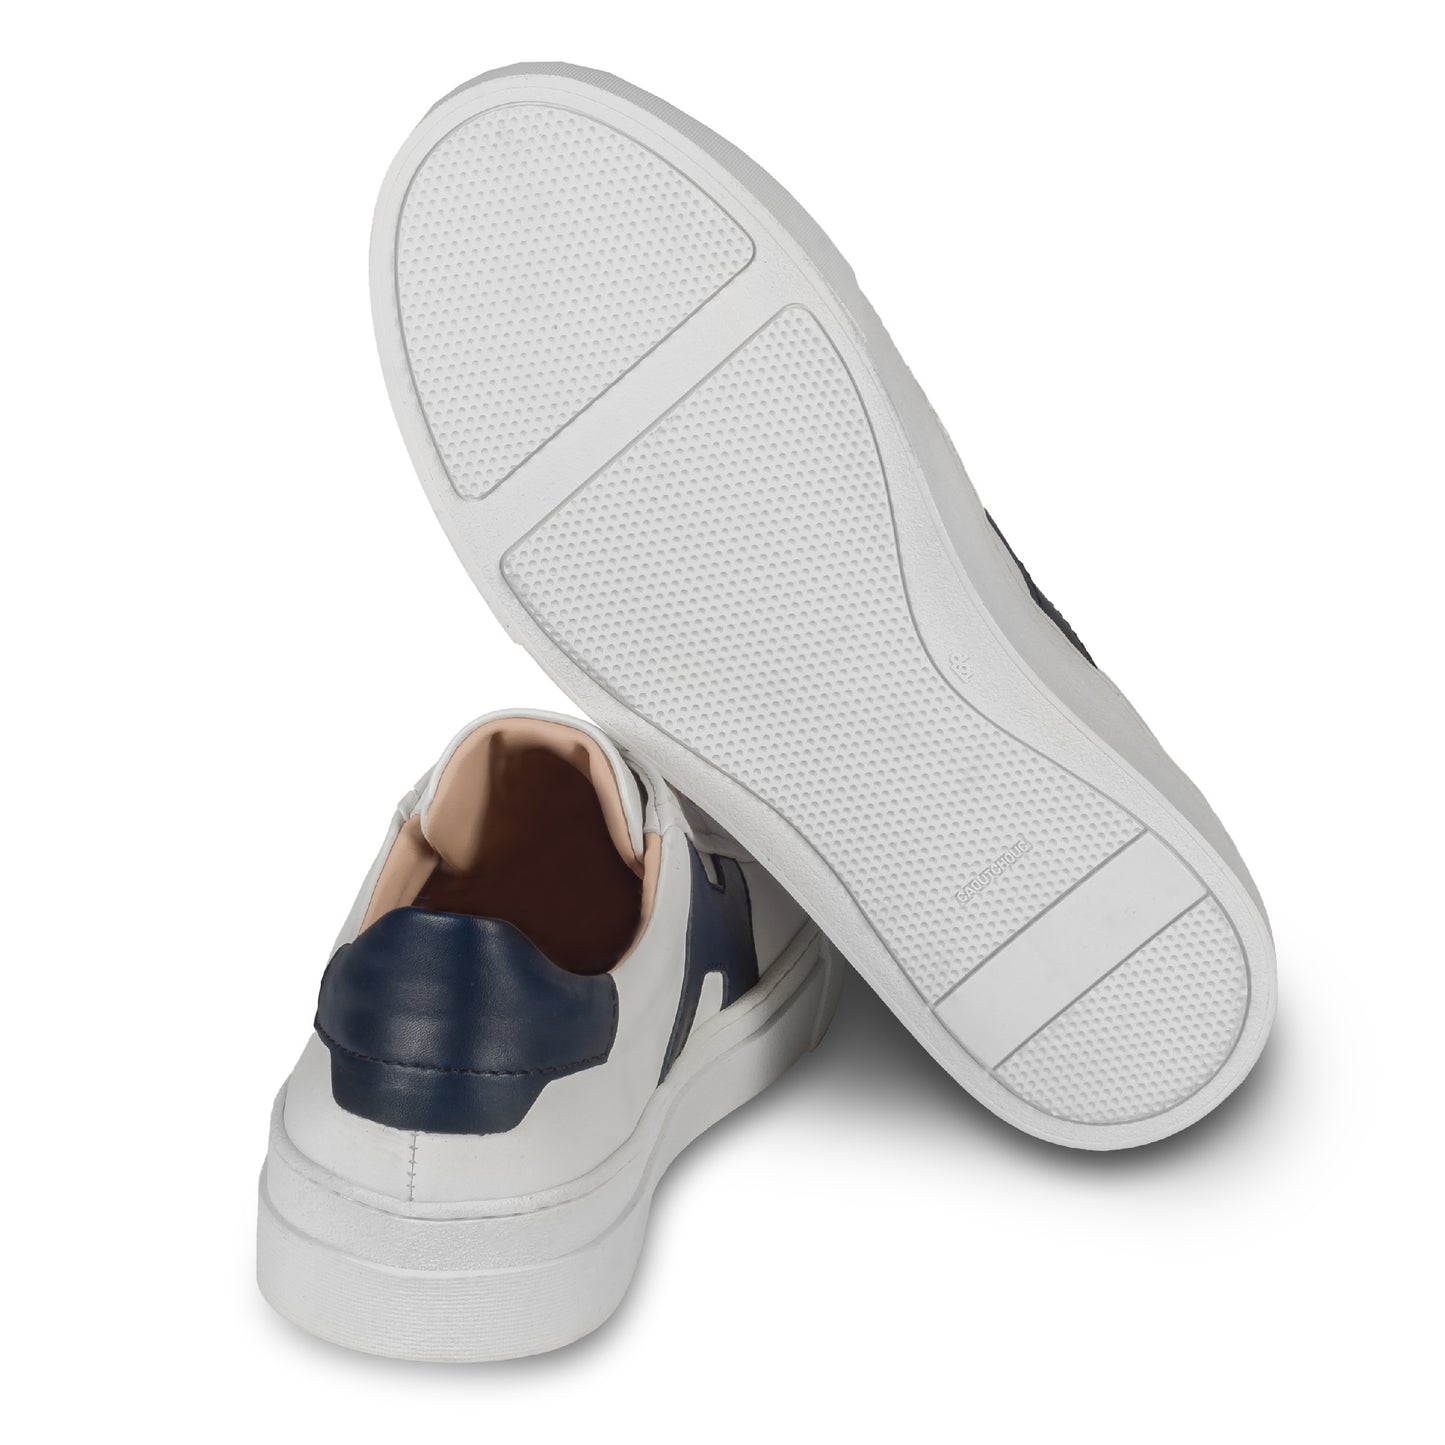 Rossano Bisconti – Italienische Herren Sneaker in weiß, mit blauen Applikationen im Santoni Style. Aus Kalbsleder mit weißer Sohle. Handgefertigt. Ansicht der Ferse und Sohlenunterseite.